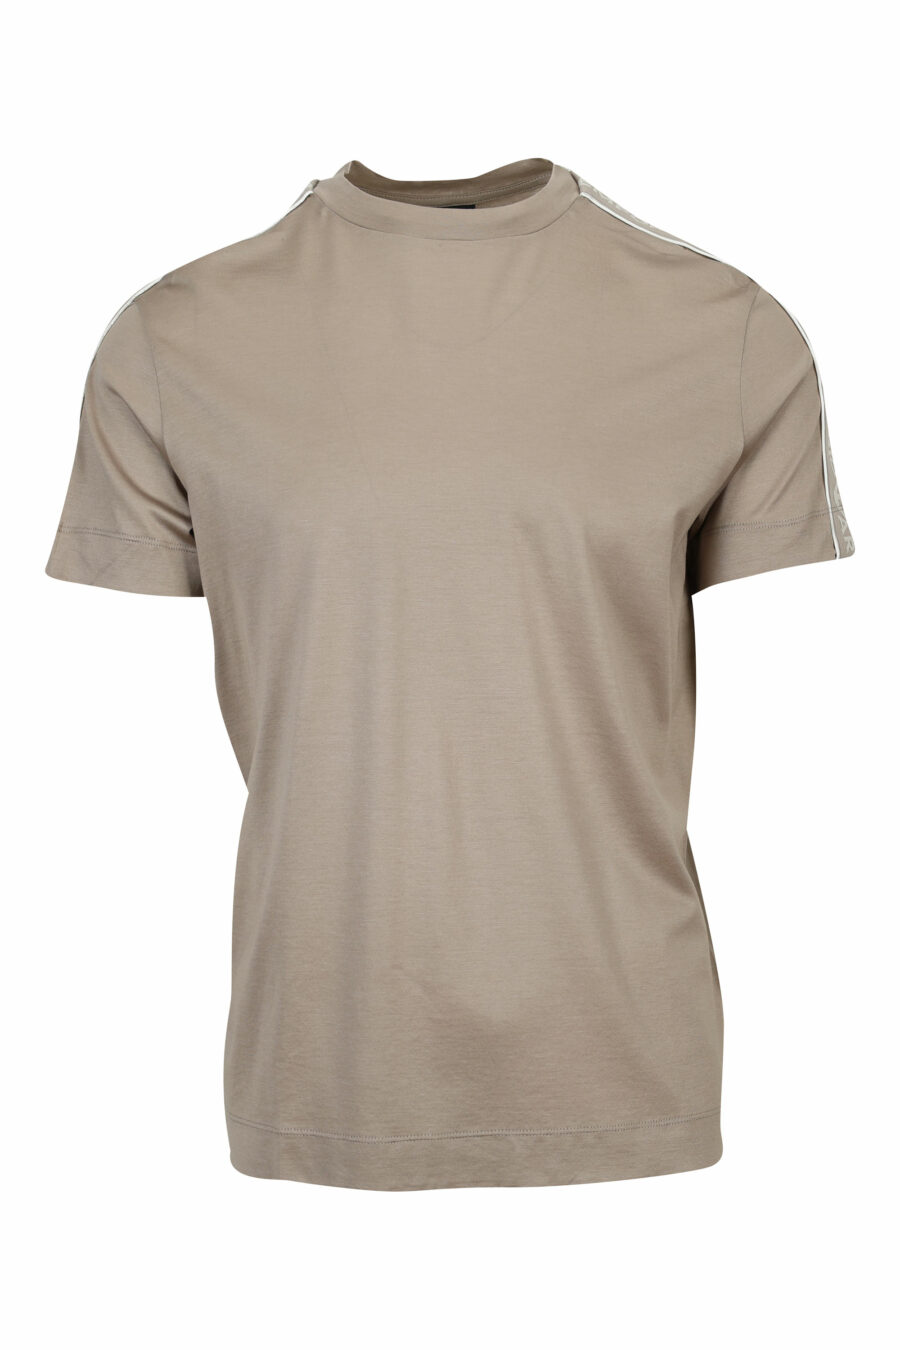 Camiseta beige con logo en hombros monocromático - 8057970958284